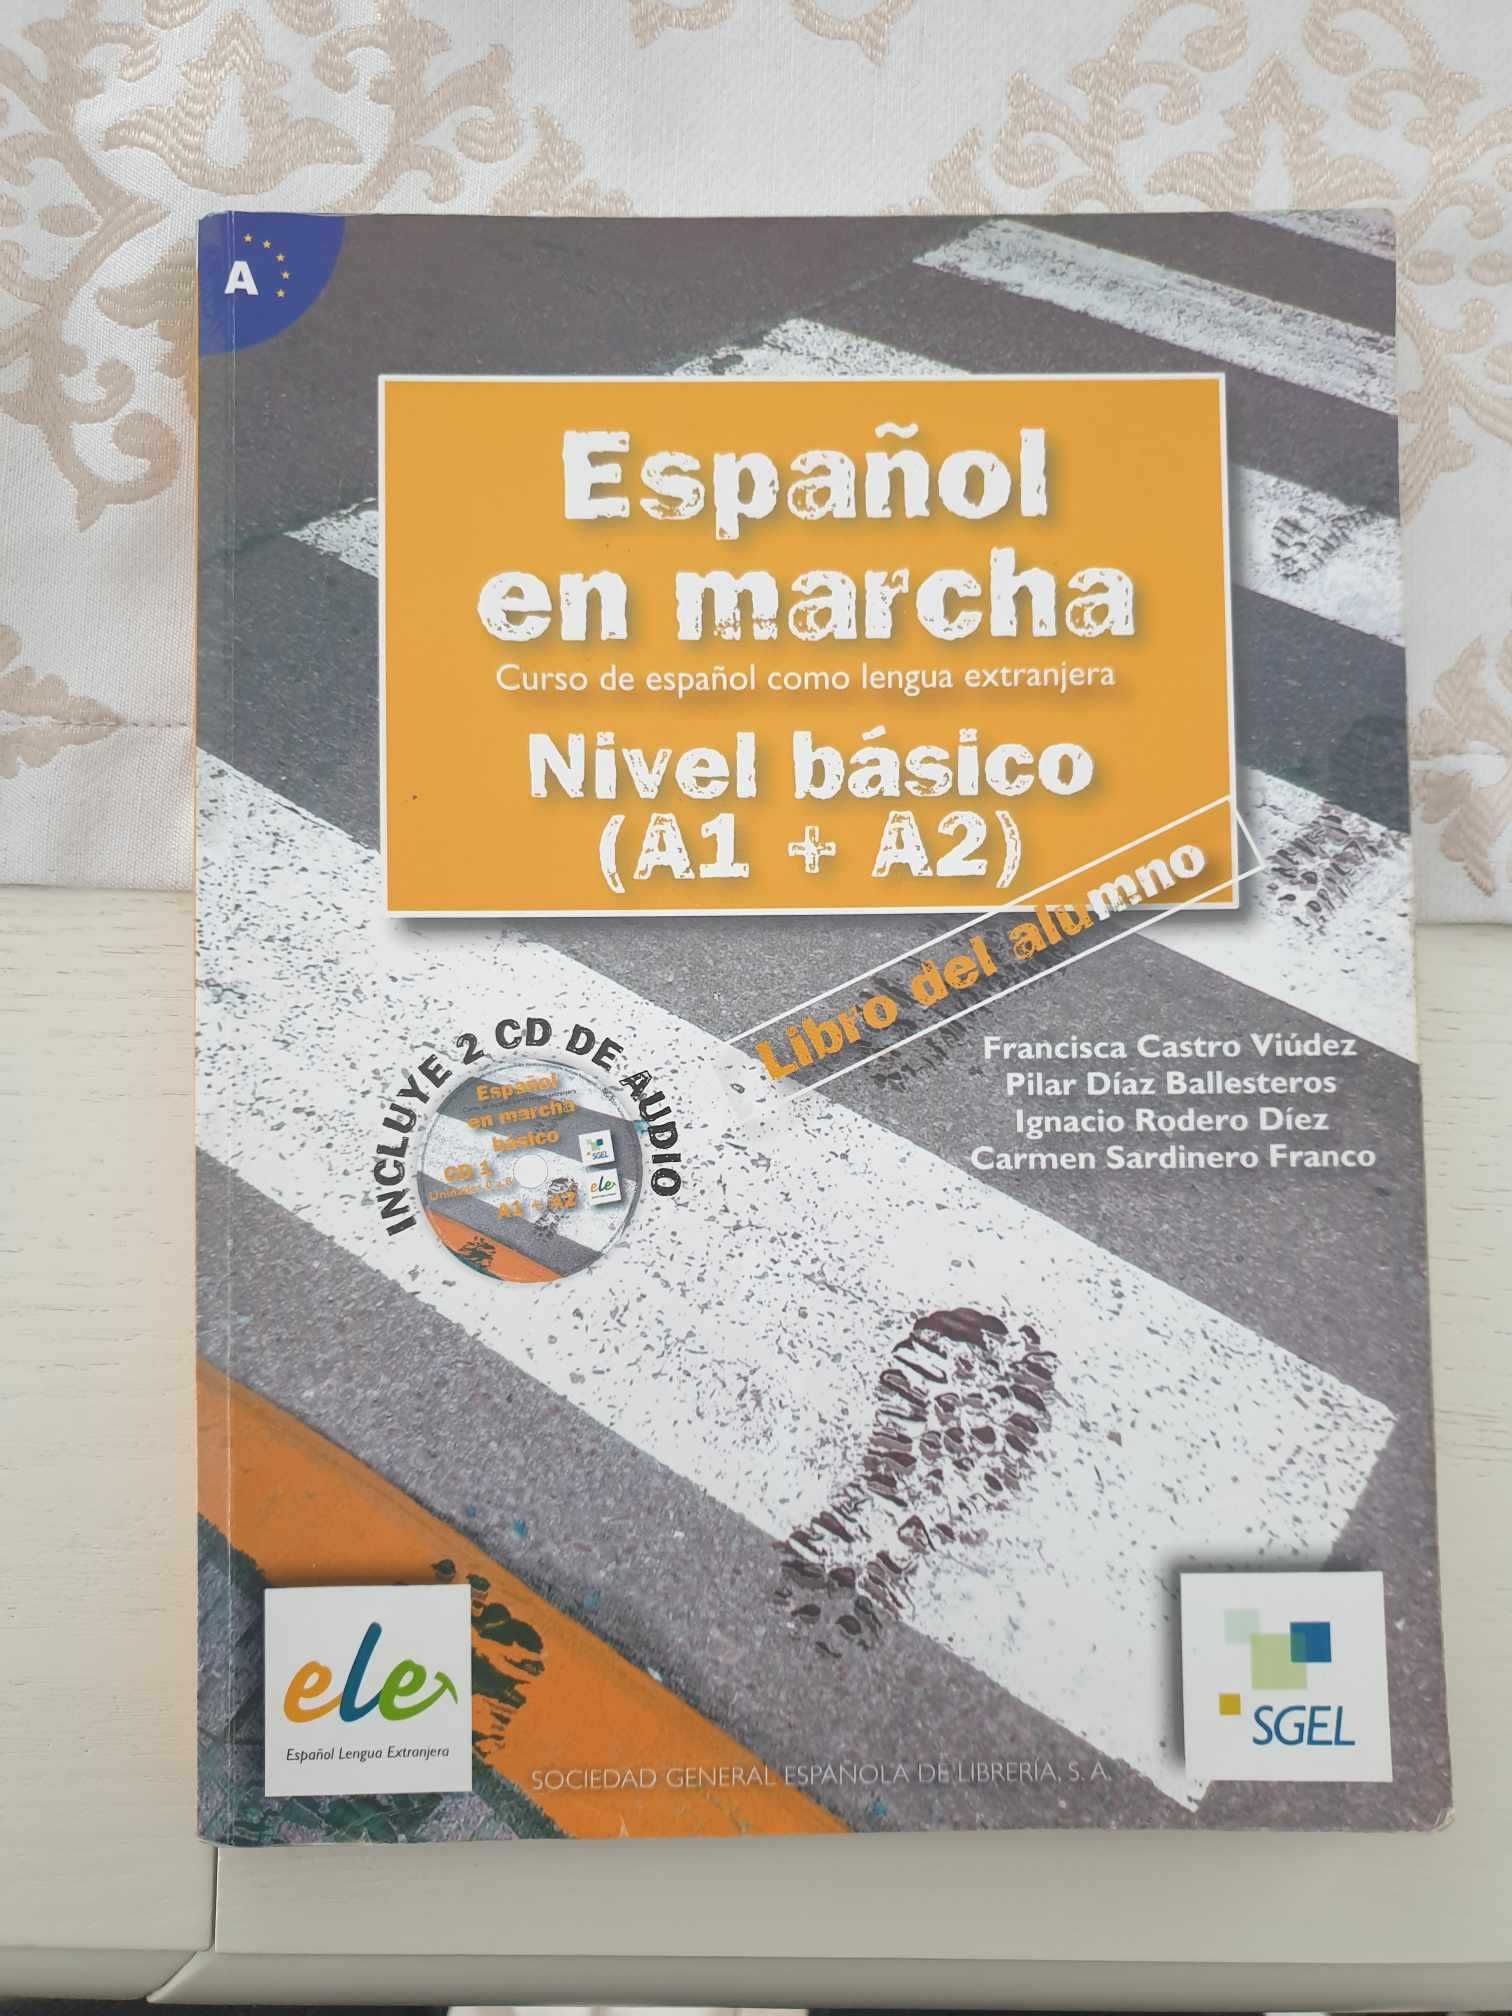 Książka do języka hiszpańskiego: Espanol en marcha Nivel basico A1+A2